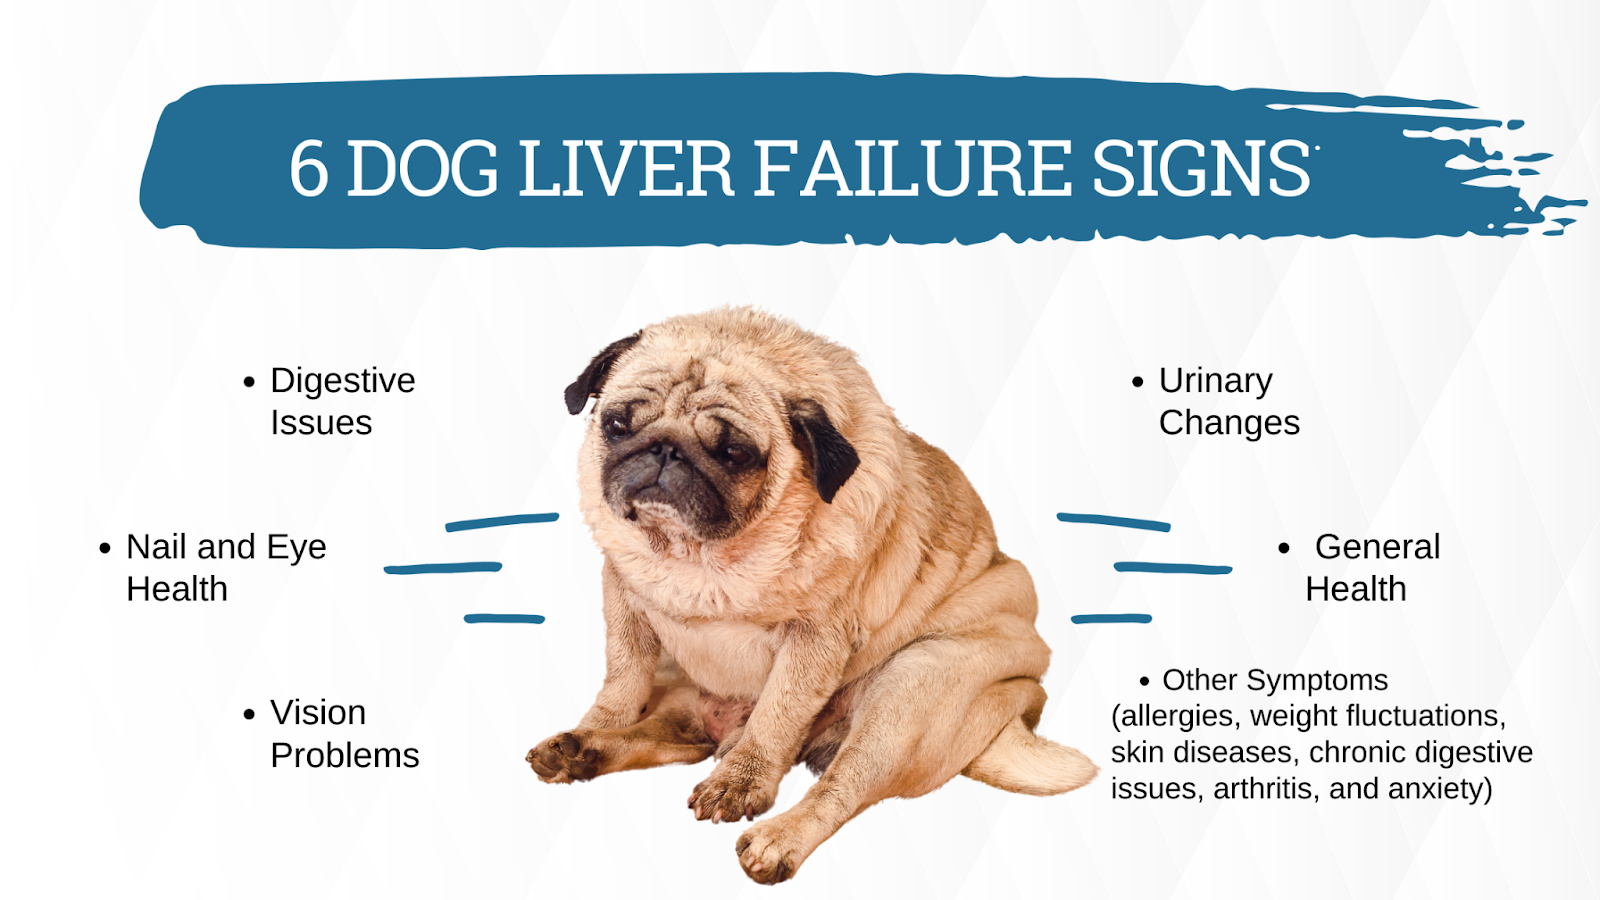 Dog liver failure signs